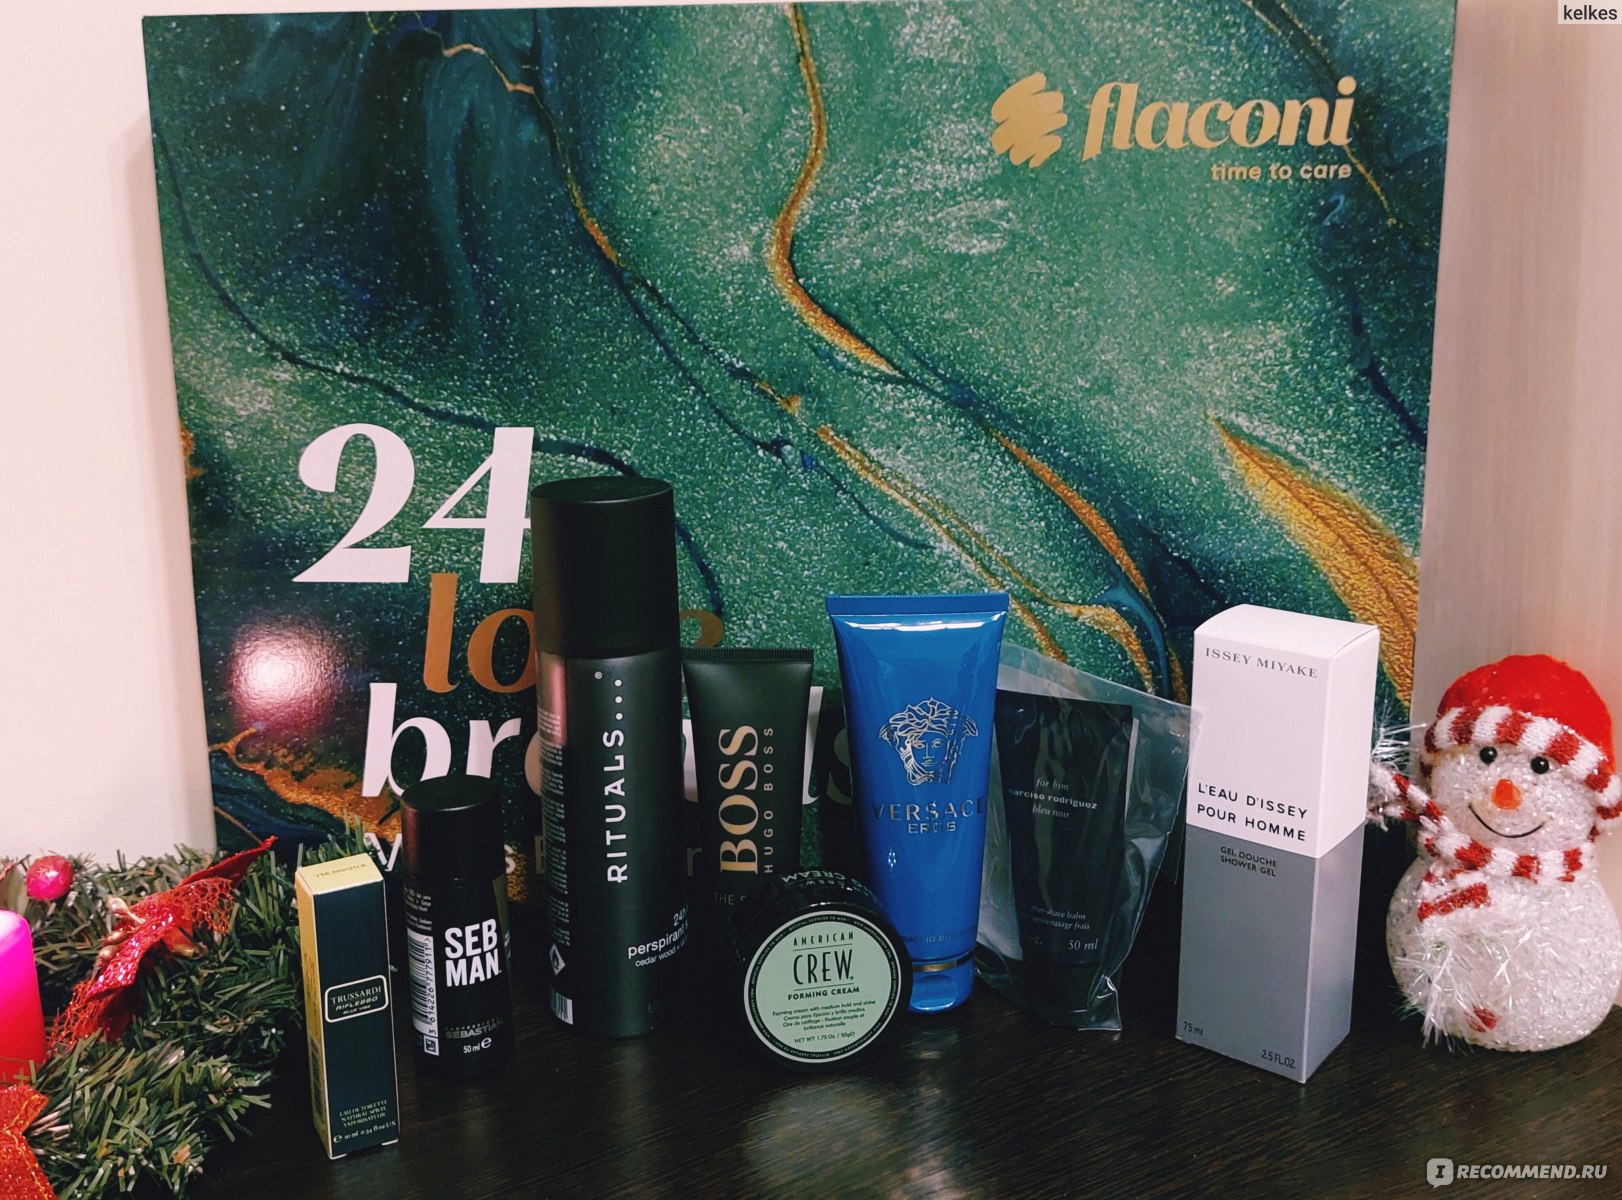 Адвент-календарь Flaconi 24 Love Brands Mens Edition Мужской 2022 год -  «Этот мужской адвент-календарь от Flaconi шокировал, пожалуй, всех.  Наполнение и выгода просто космические! » | отзывы